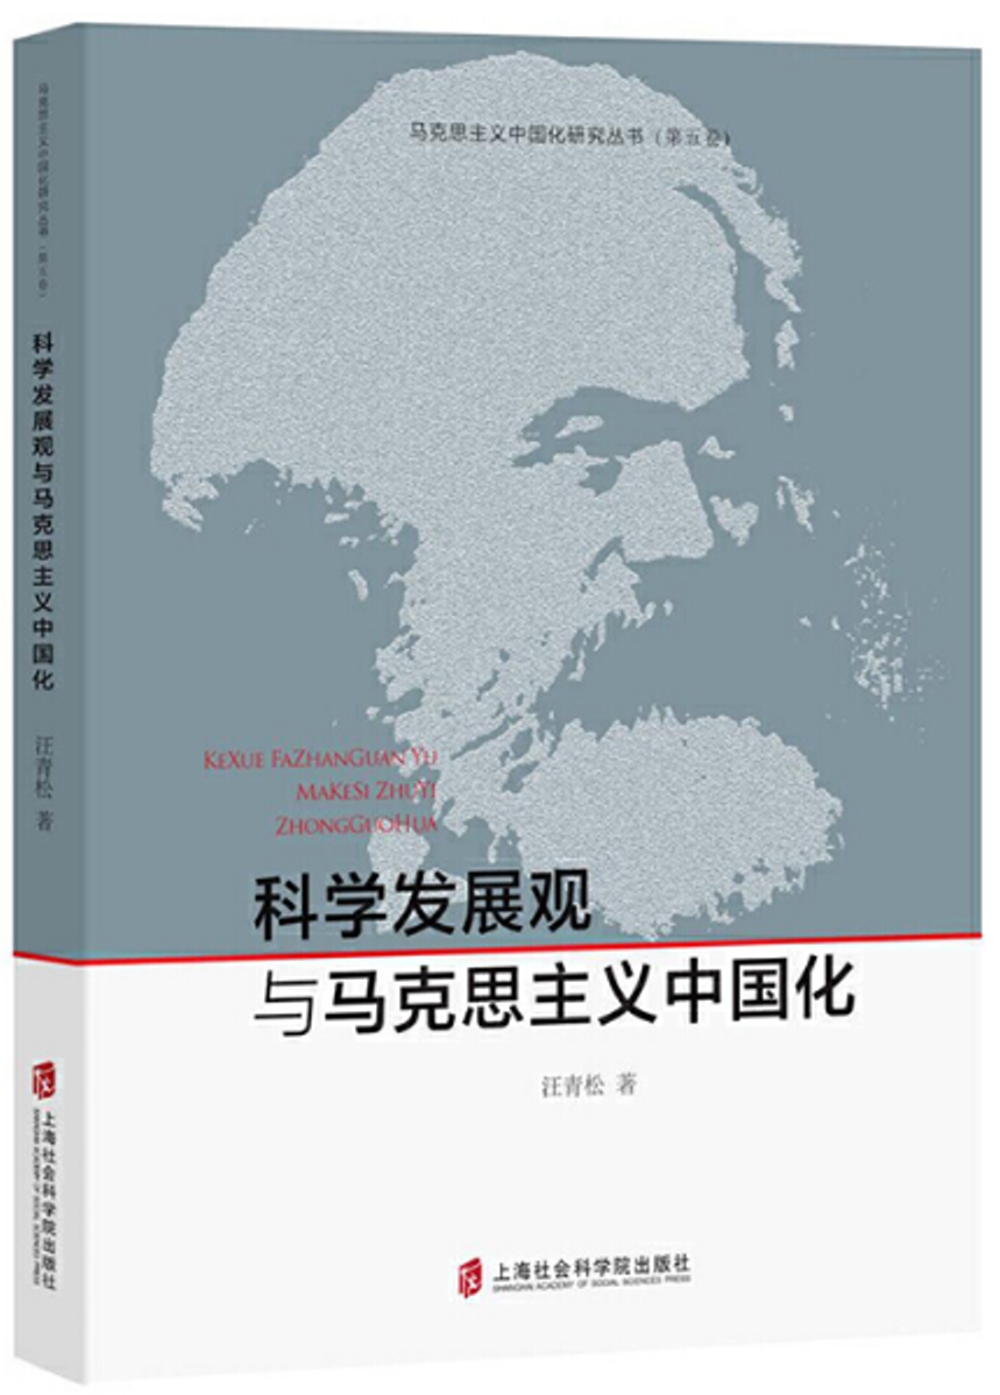 科學發展觀與馬克思主義中國化